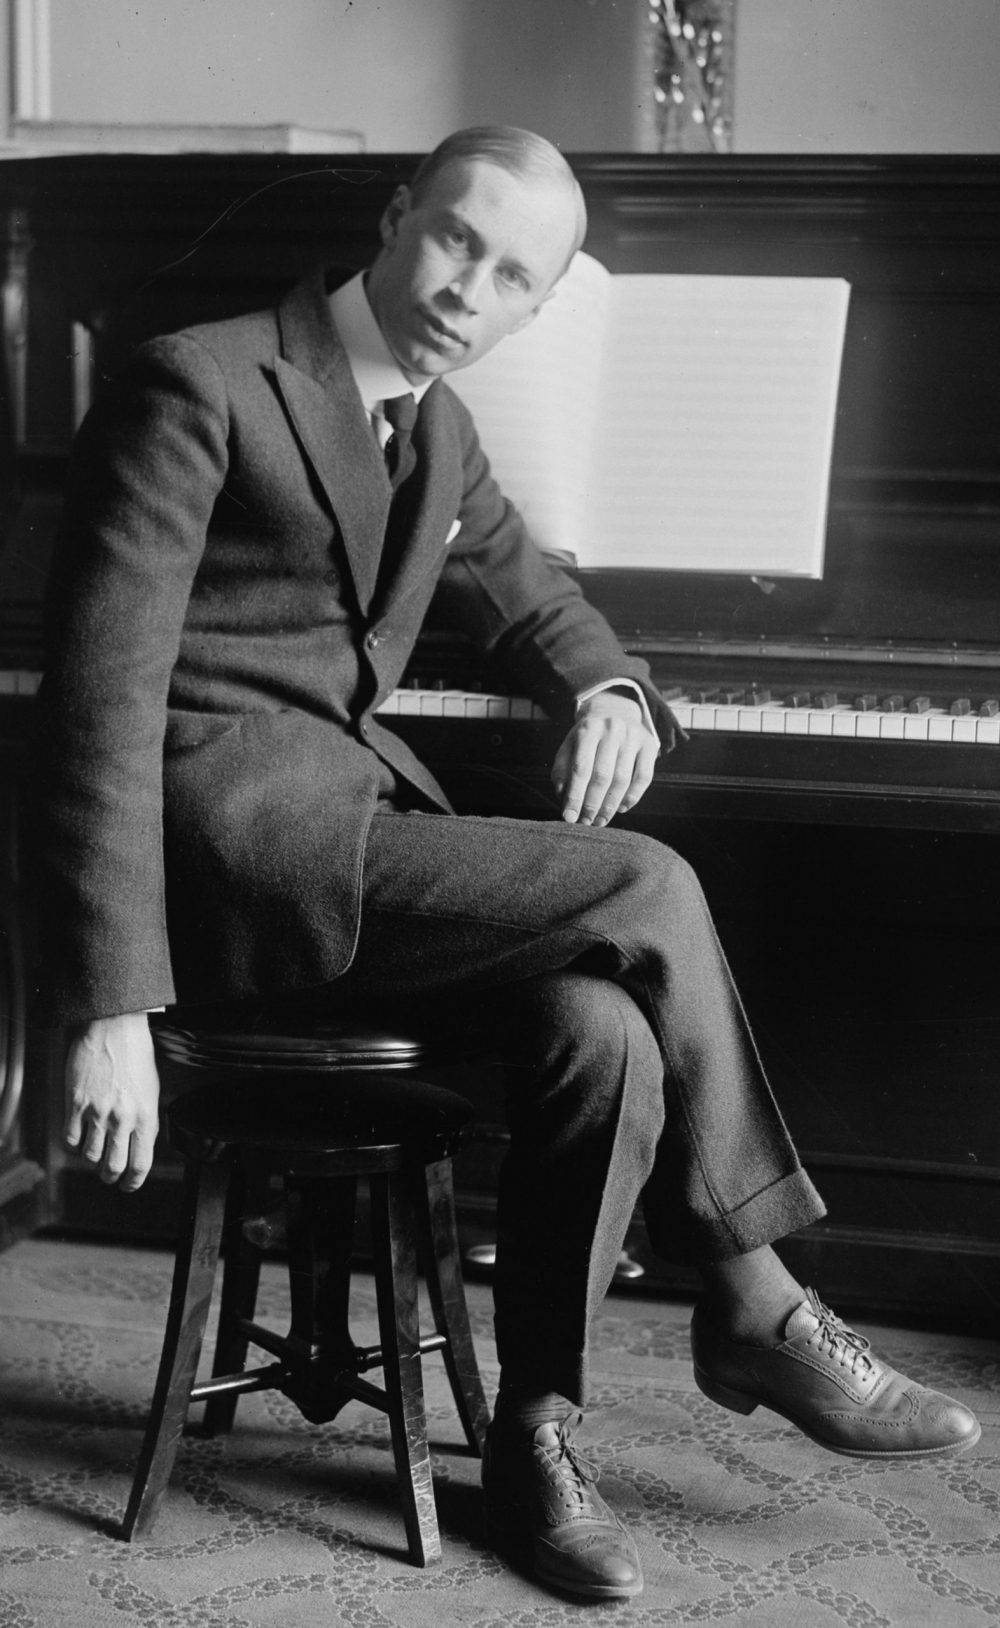 Prokofiev là bậc thầy của nhiều thể loại âm nhạc bao gồm opera, giao hưởng, ballet, concerto và sonata đã để lại dấu ấn không thể phai mờ trong nền âm nhạc cổ điển thế kỷ 19 đến hôm nay.